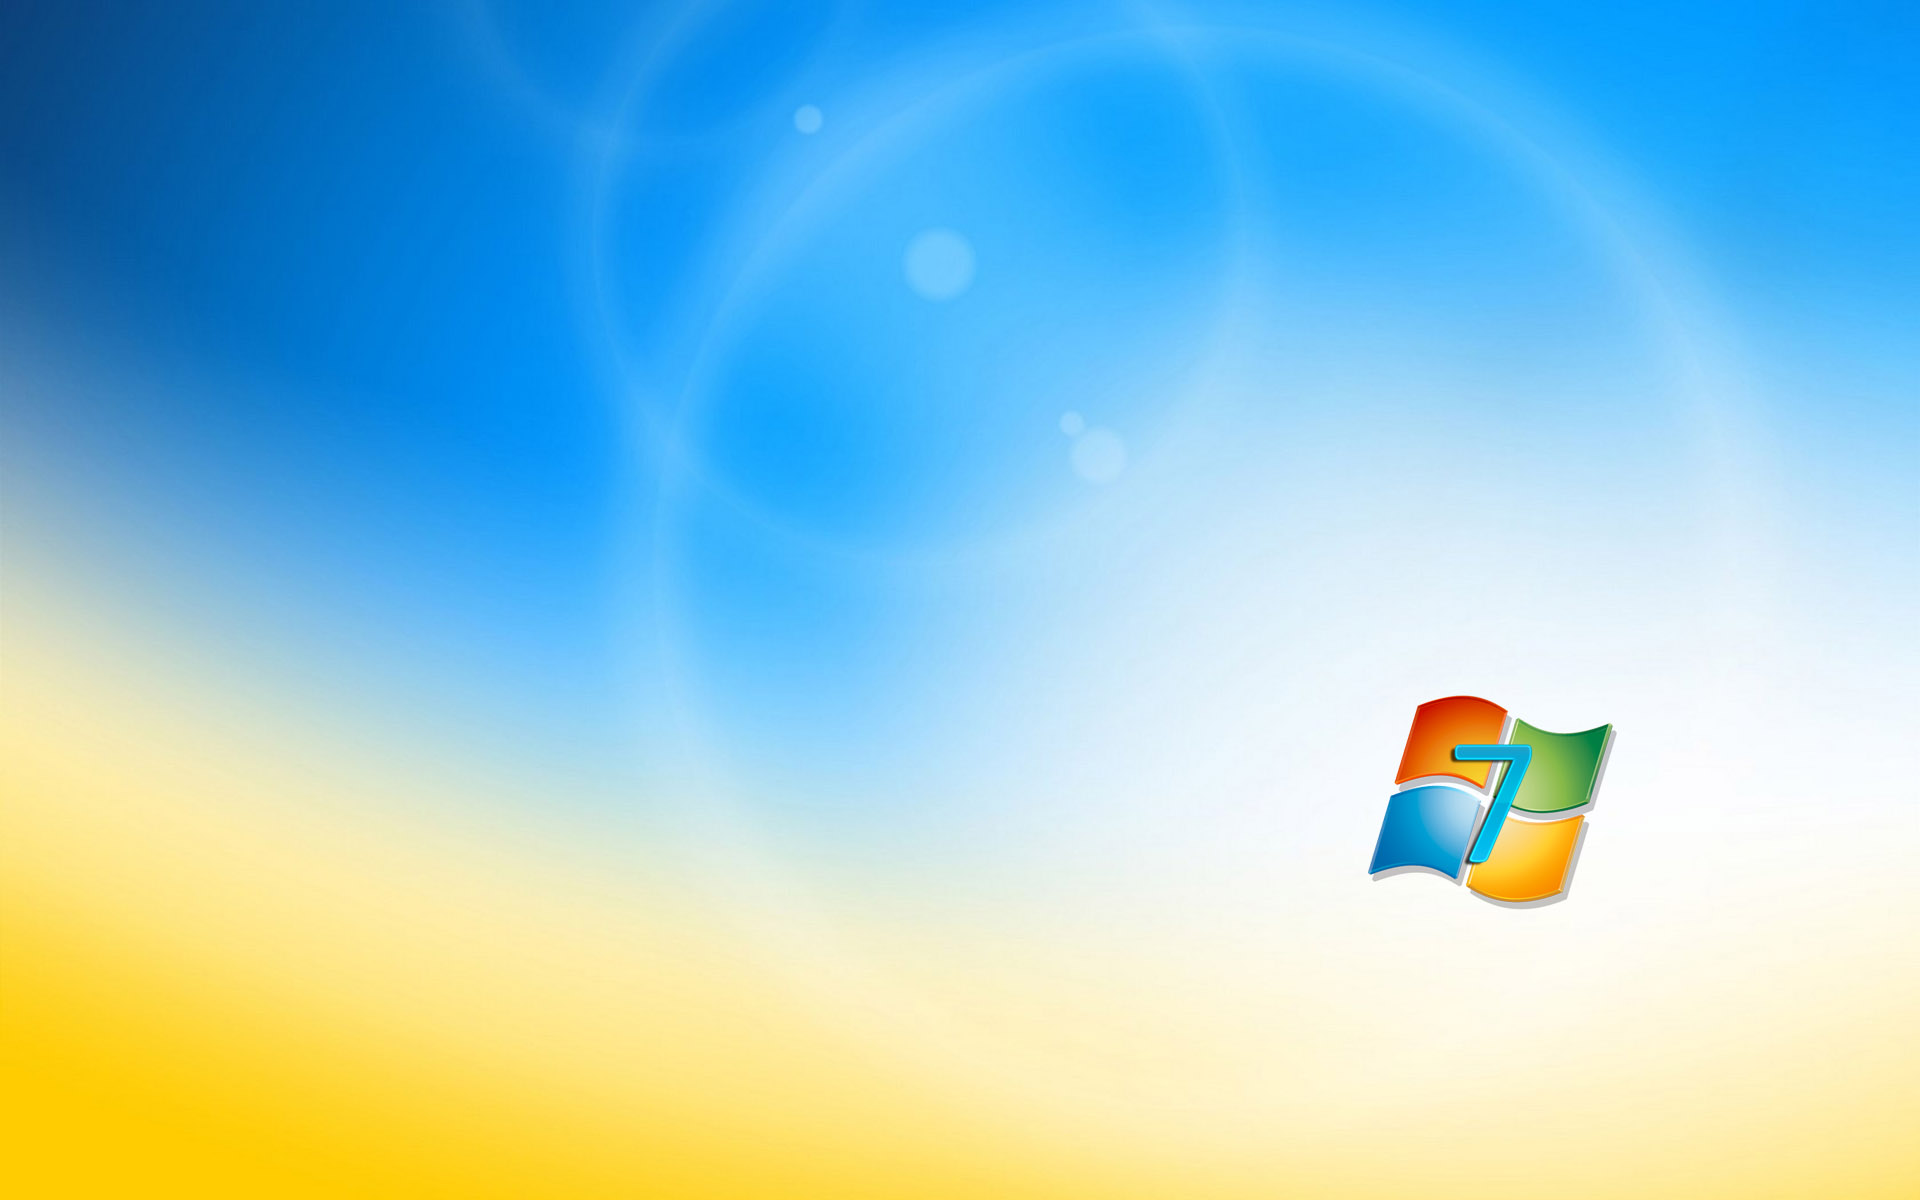 Windows 7 Free Background - Windows 7 Wallpaper (26875597) - Fanpop